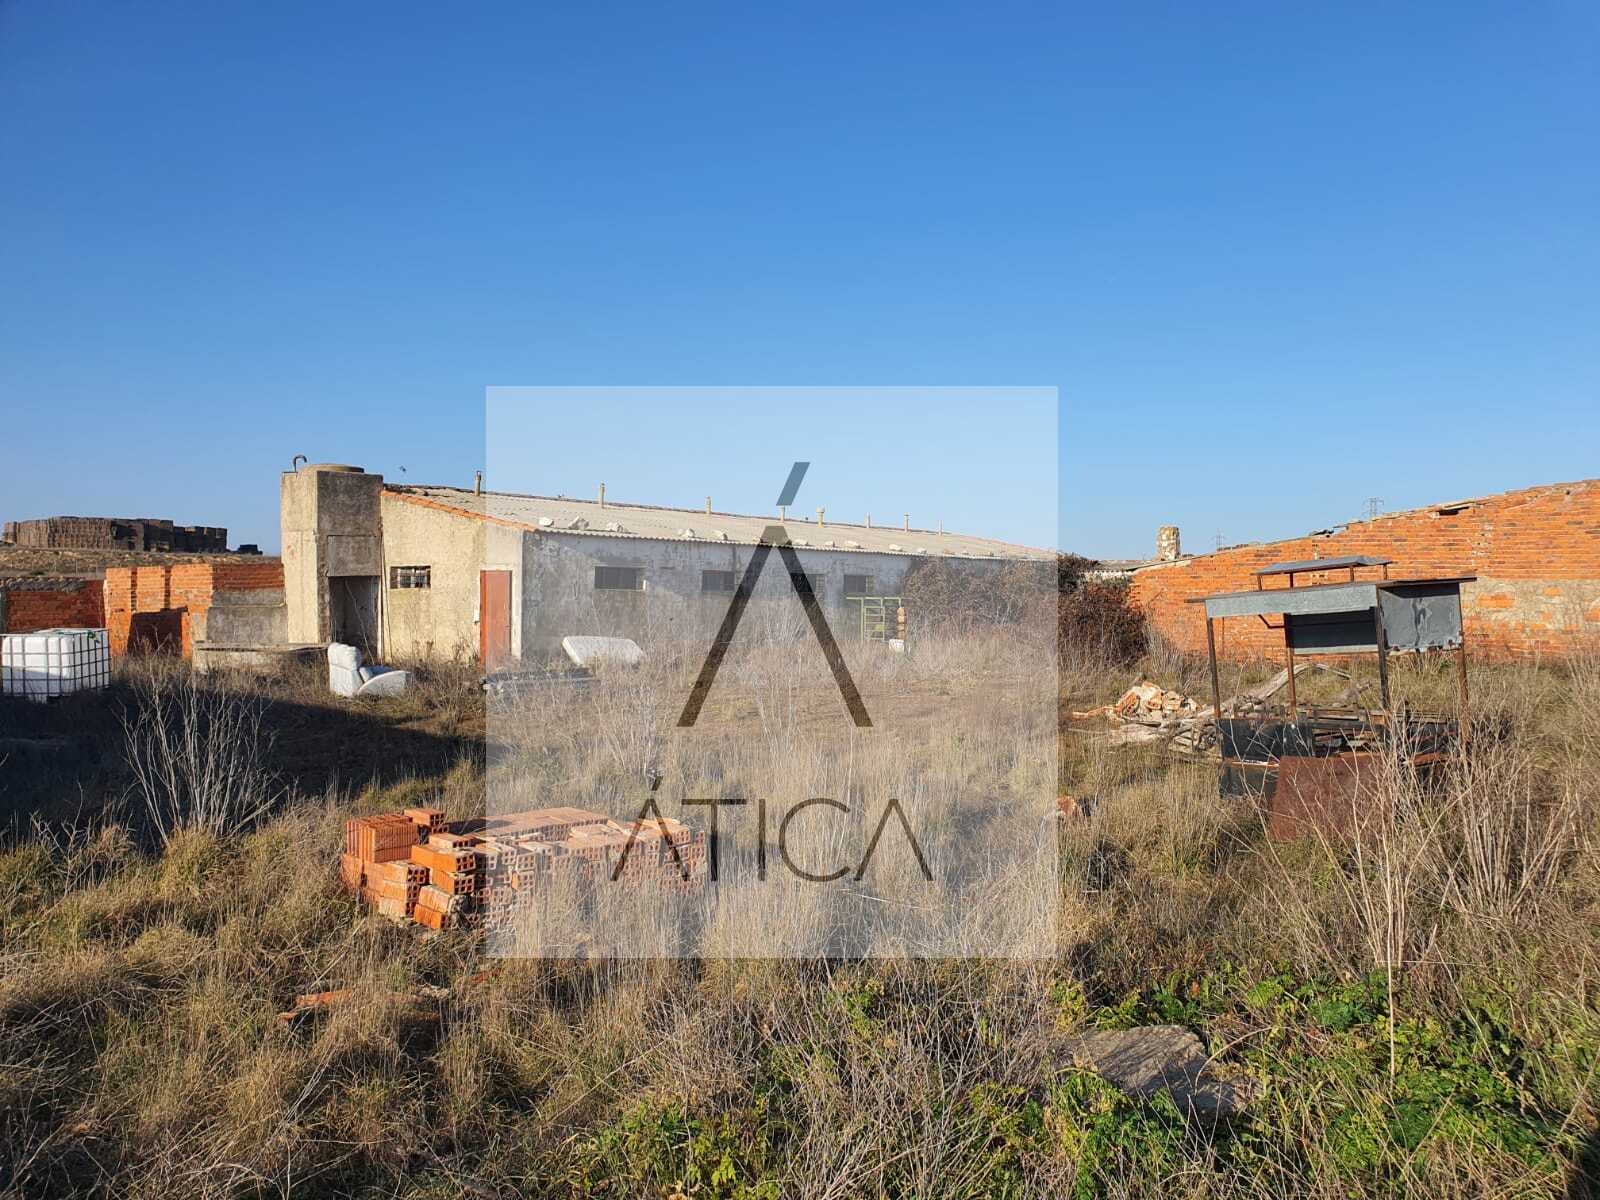 Ática inmobiliaria especializada en compra y venta de pisos, casas, chalets, apartamentos, áticos en Zamora.